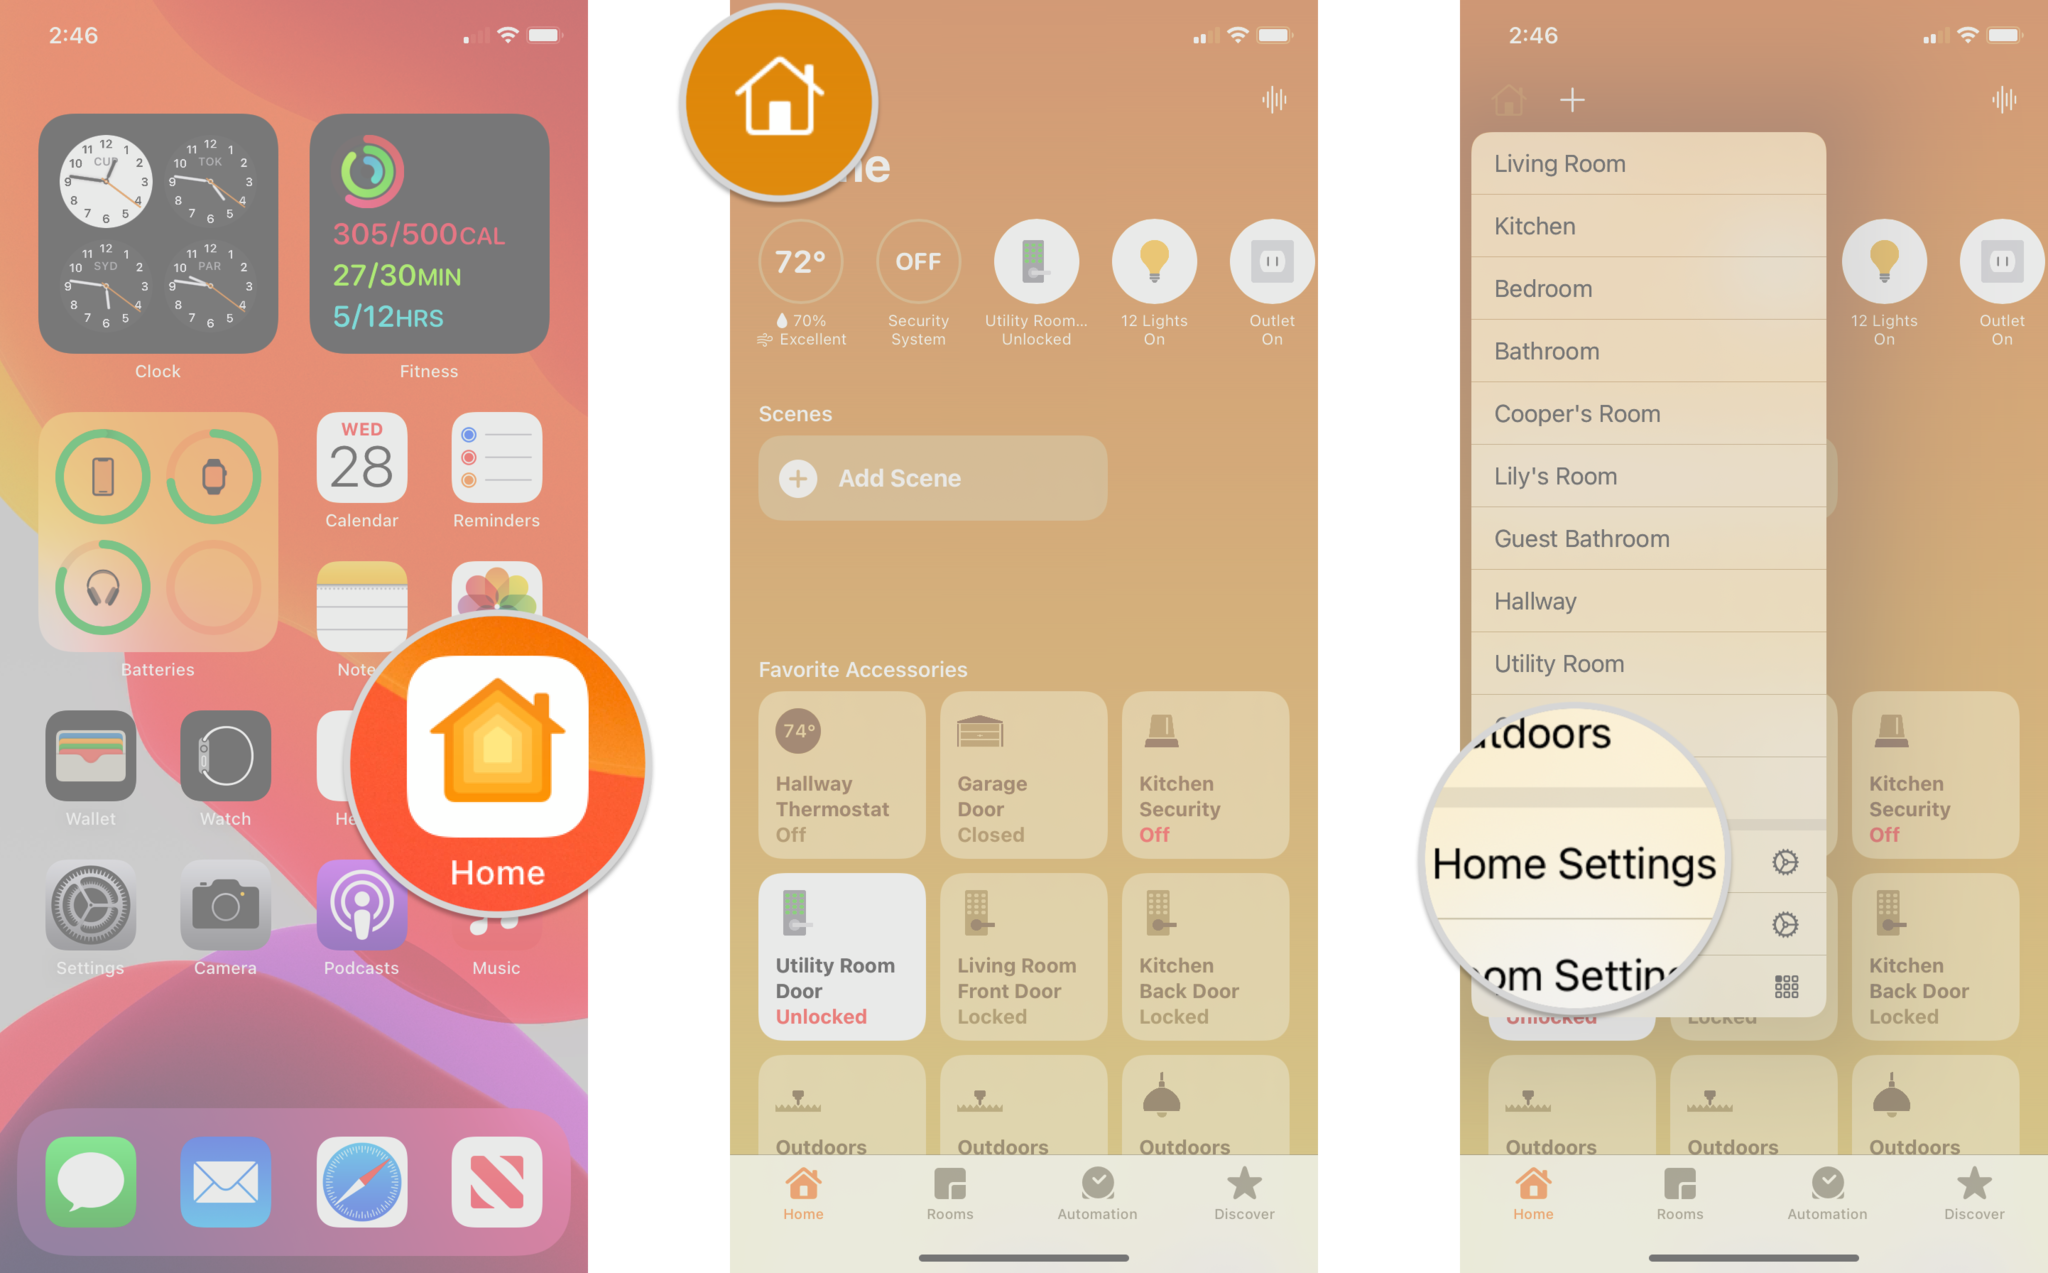 Comment renommer un routeur HomeKit dans l'application Home en affichant les étapes sur un iPhone : lancez l'application Home, appuyez sur l'icône Home, appuyez sur Home Settings